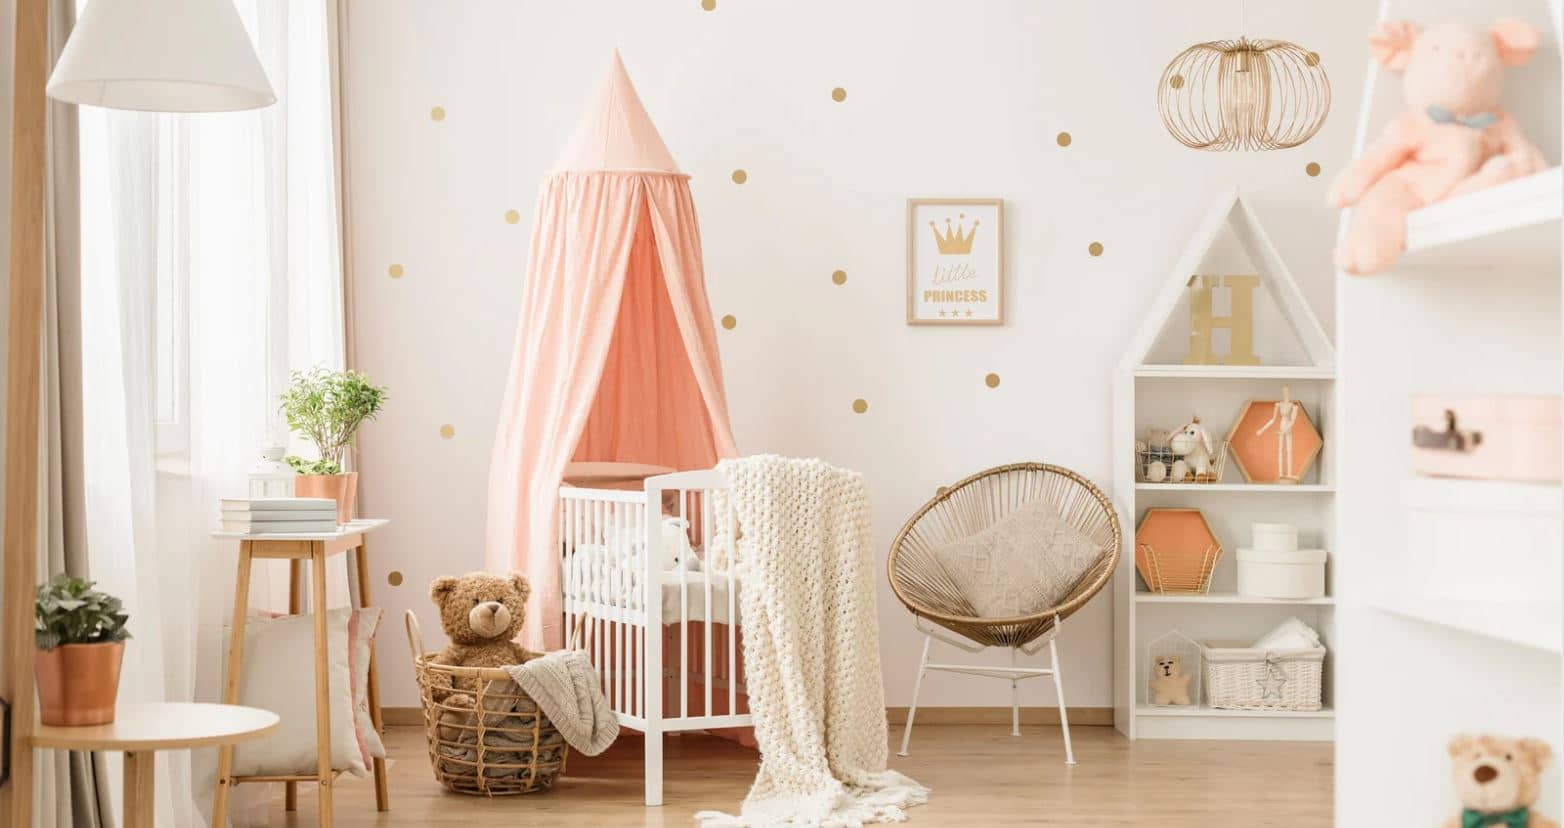 Chambre bébé aménagée avec mobilier éthique pour bébé, tons clairs et naturels, linge bio